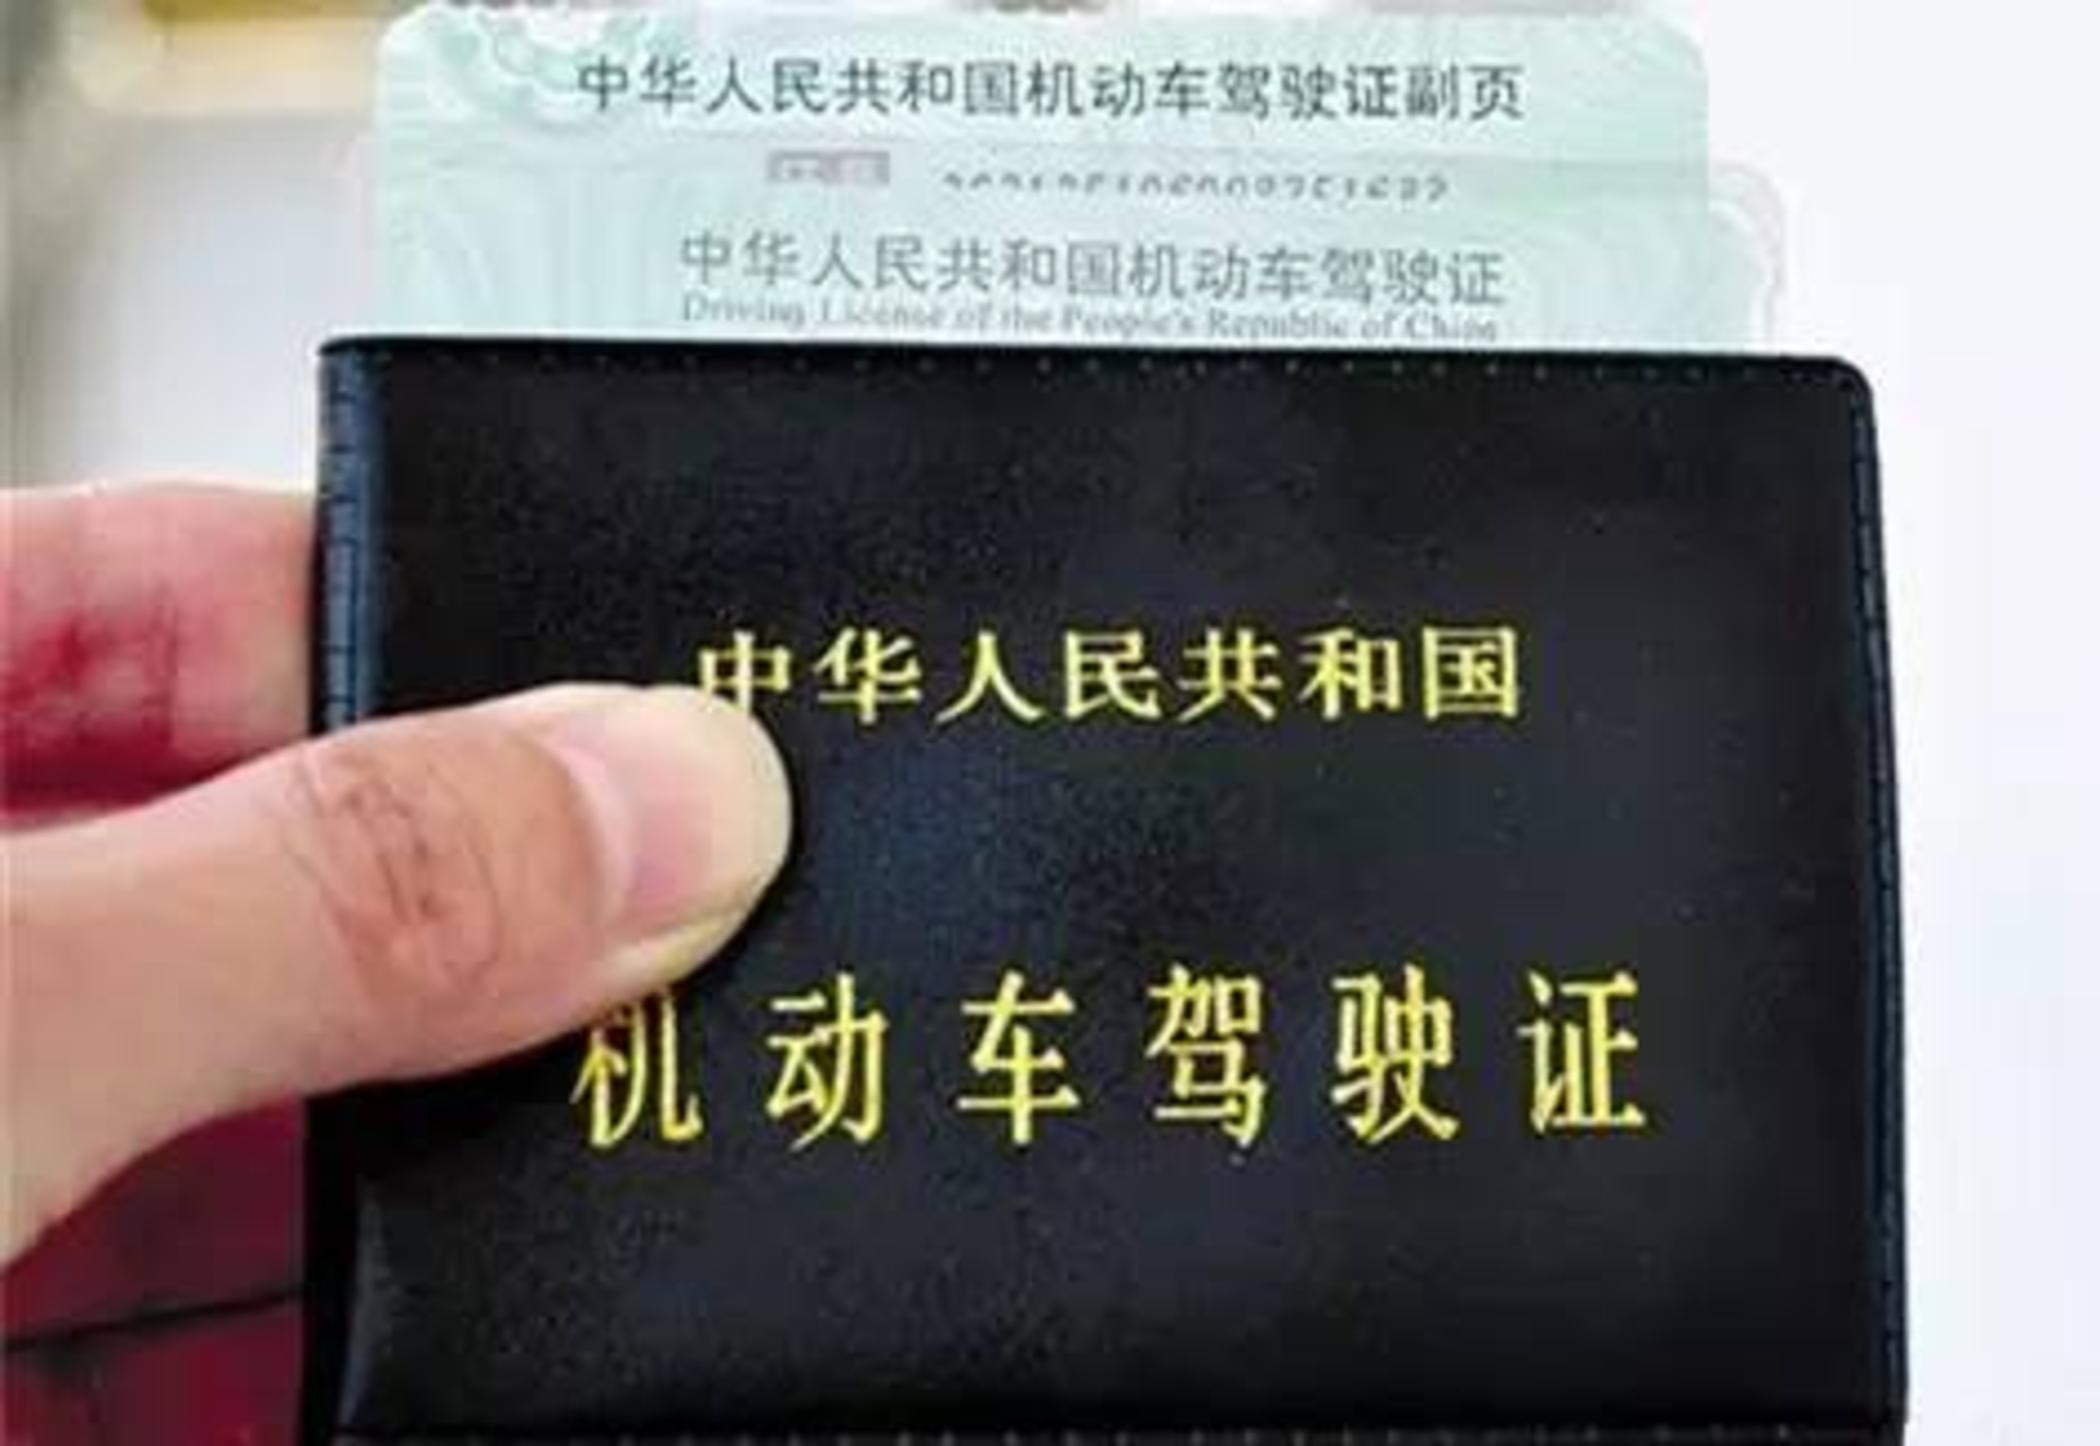 上海驾照和外地驾照有什么区别